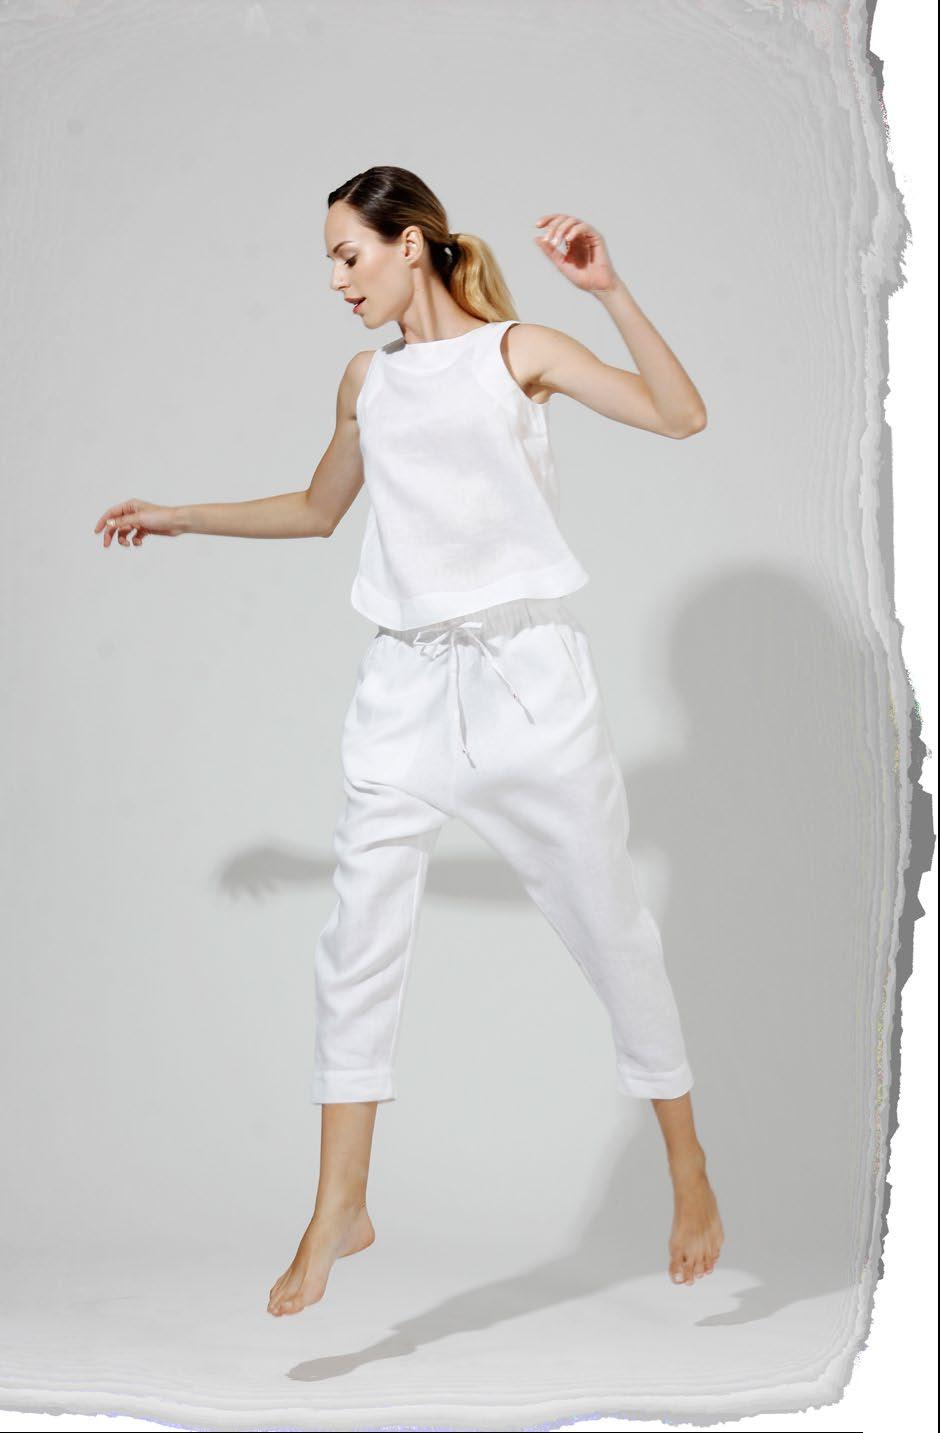 & essentials Vanna tailored sleeveless top in linen super light LG 636 BI XS, S, M, L, XL Aisyer drop